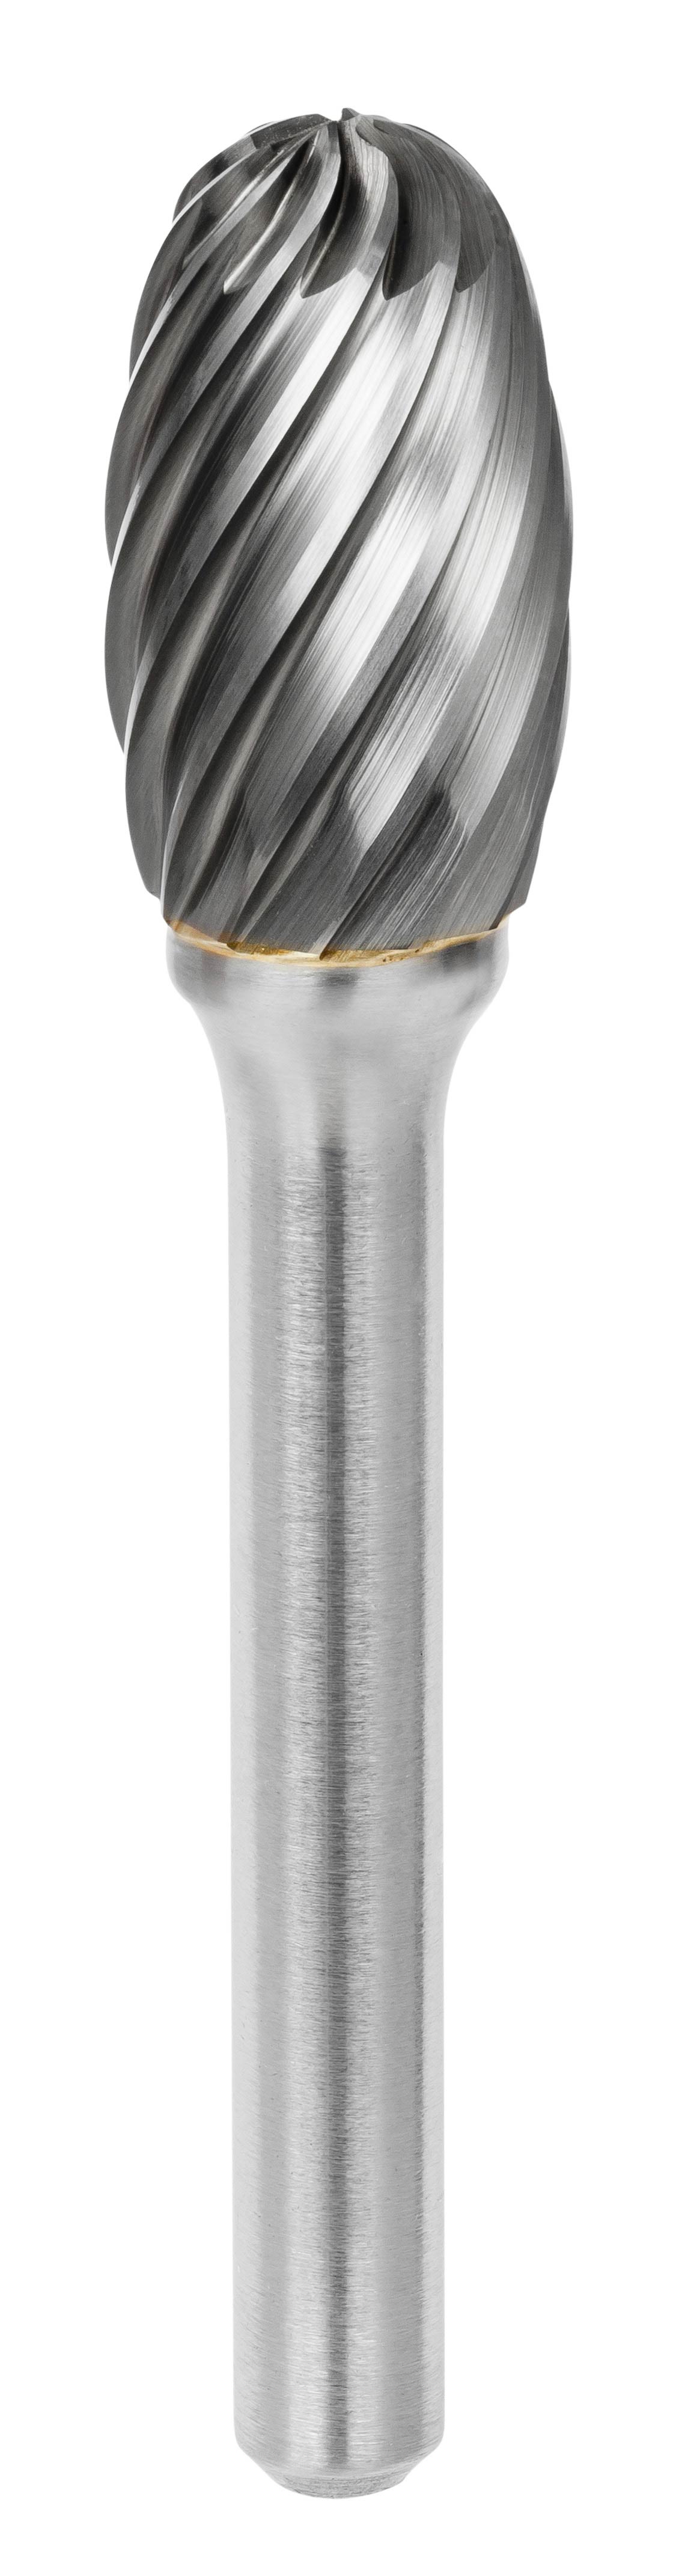 Fraise carbure - cône ø 6mm - denture croisée très grosse